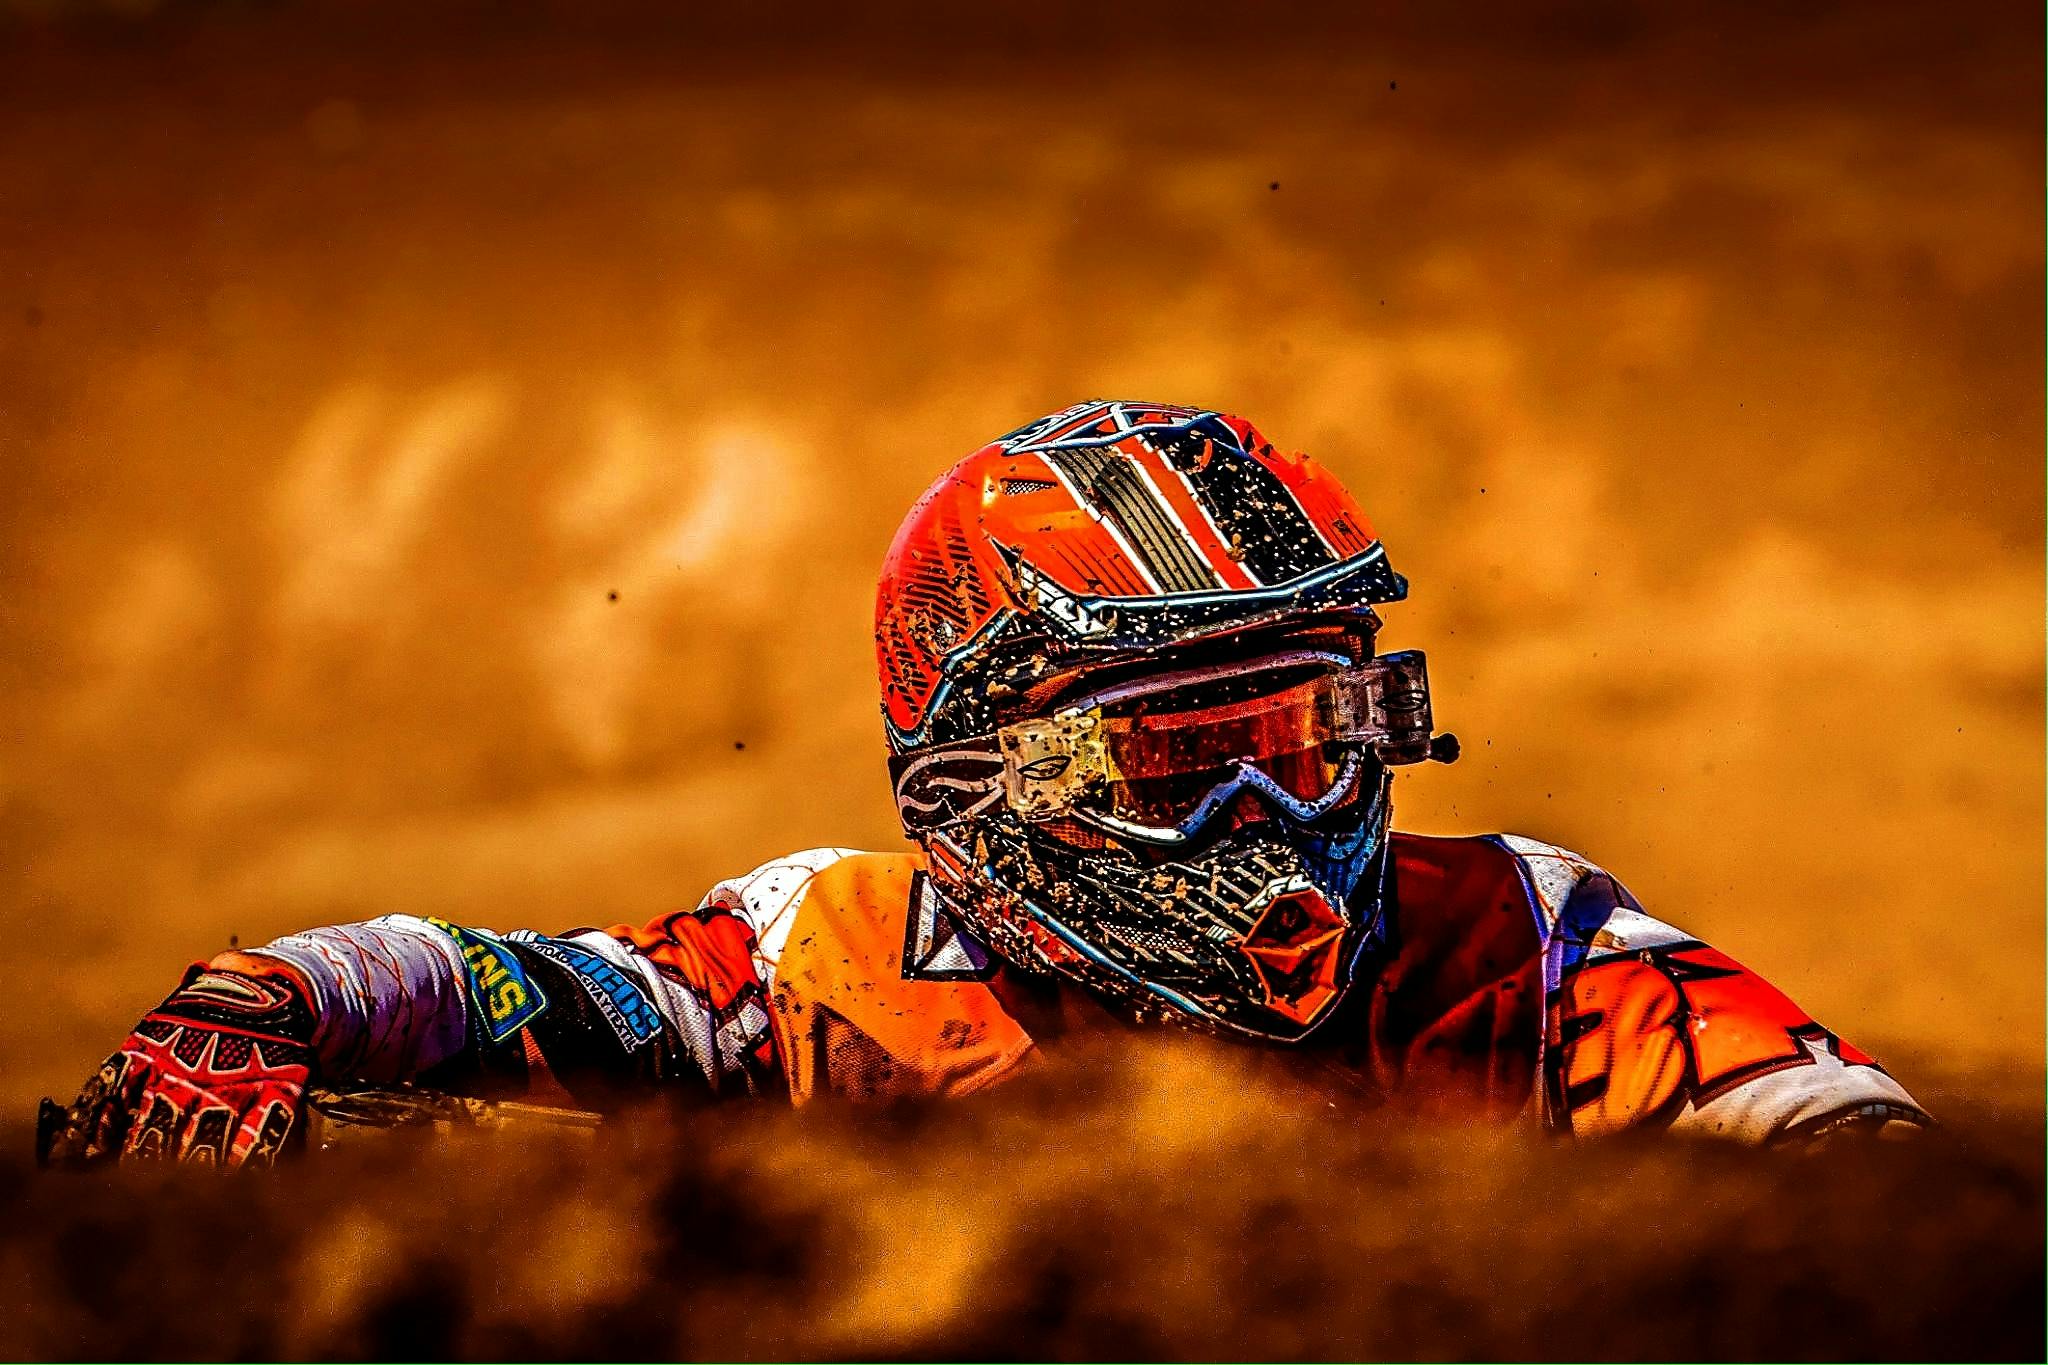 Fotos Corrida Motocross, 61.000+ fotos de arquivo grátis de alta qualidade